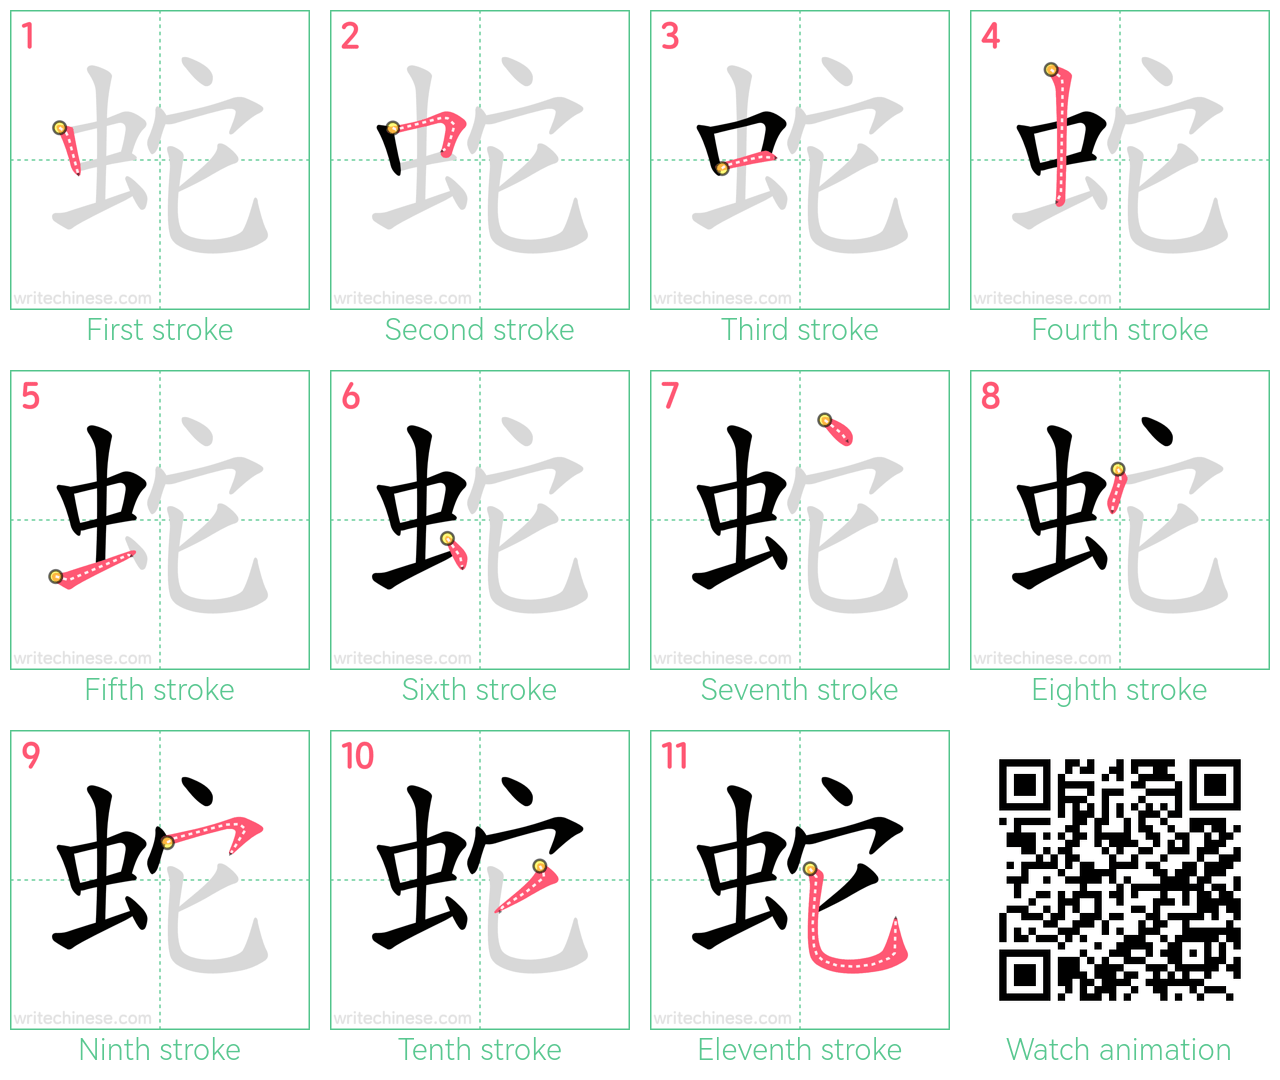 蛇 step-by-step stroke order diagrams